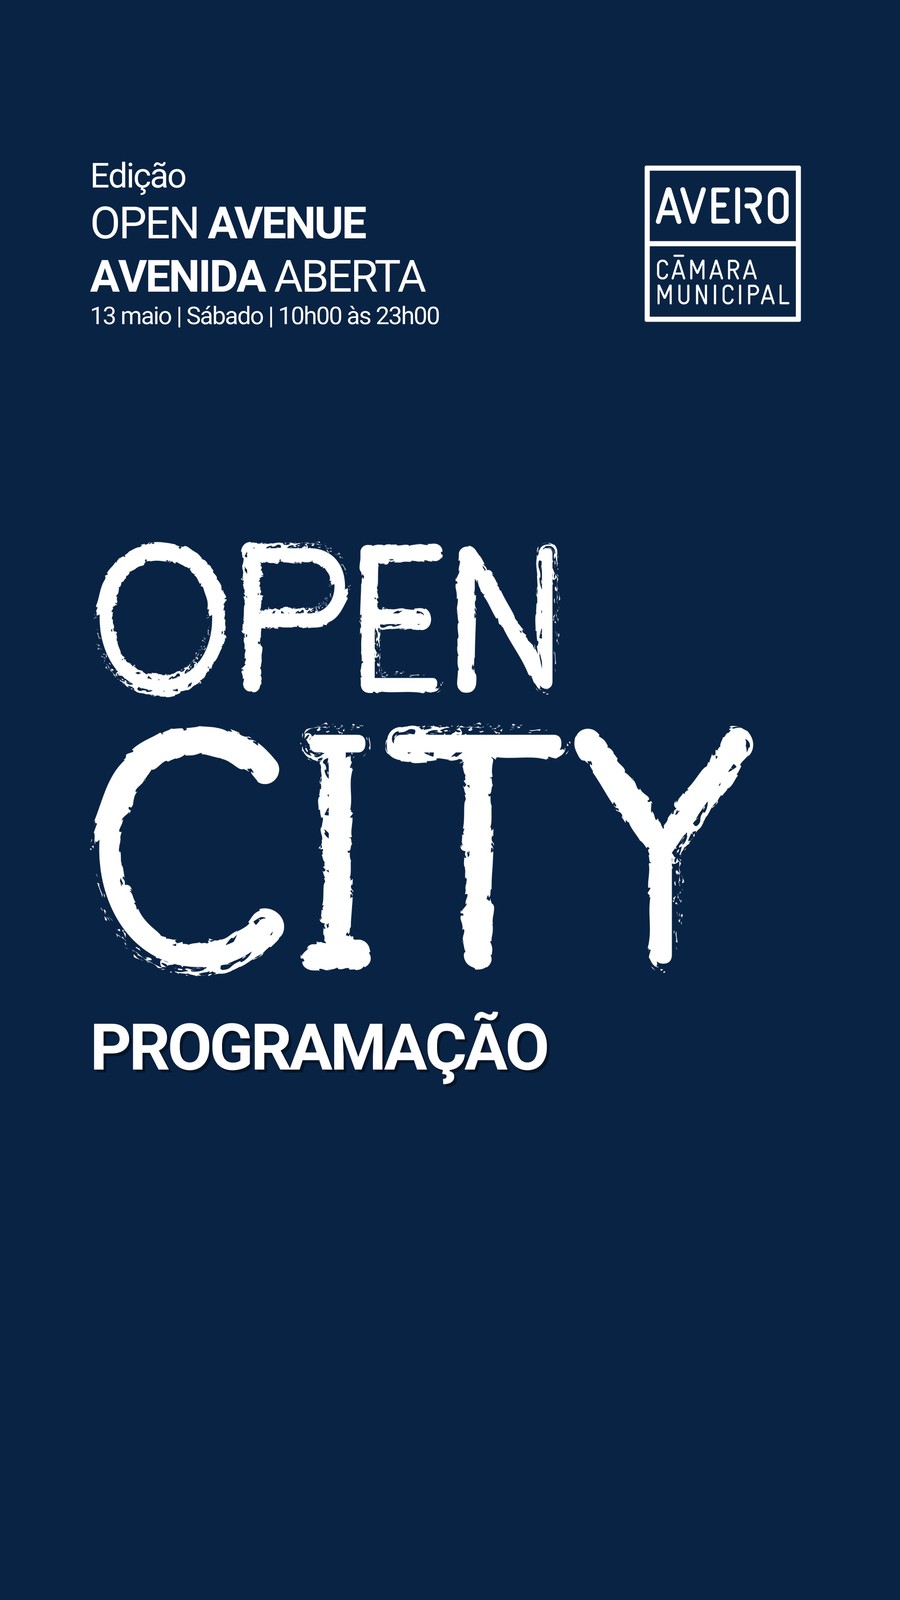 Open City 2023 celebra a abertura da Avenida Dr. Lourenço Peixinho com edição especial dedicada -...